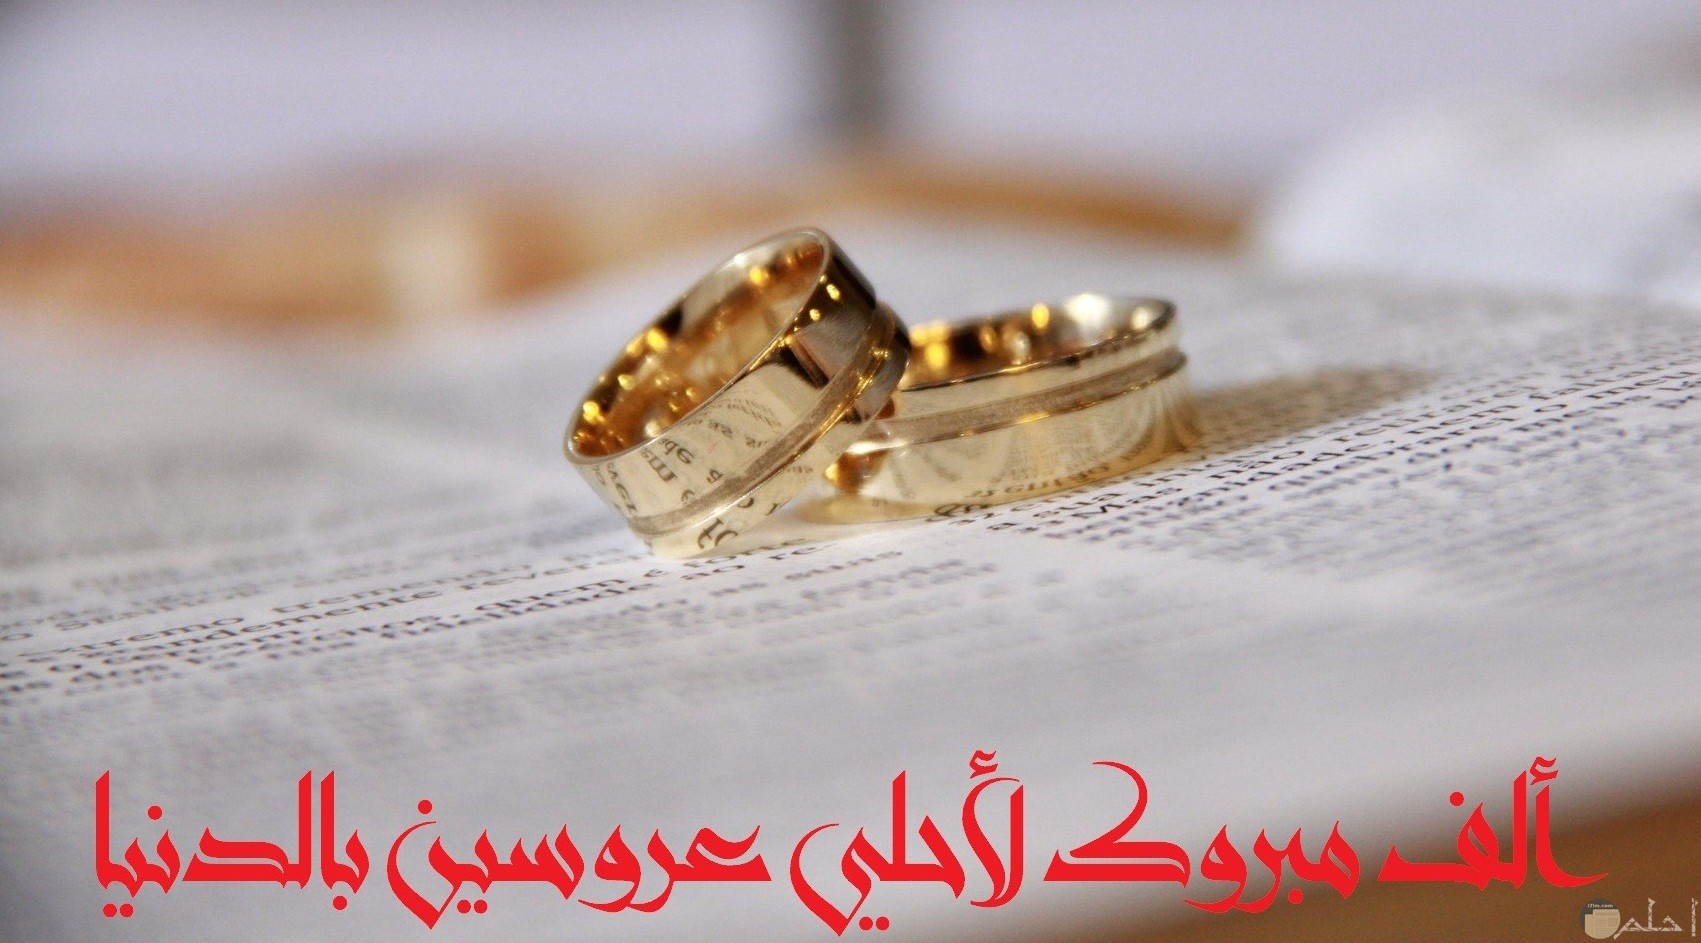 صورة تهنئة جميلة مكتوب عليها ألف مبروك لأحلي عروسين بالدنيا مع خاتمين حلوين